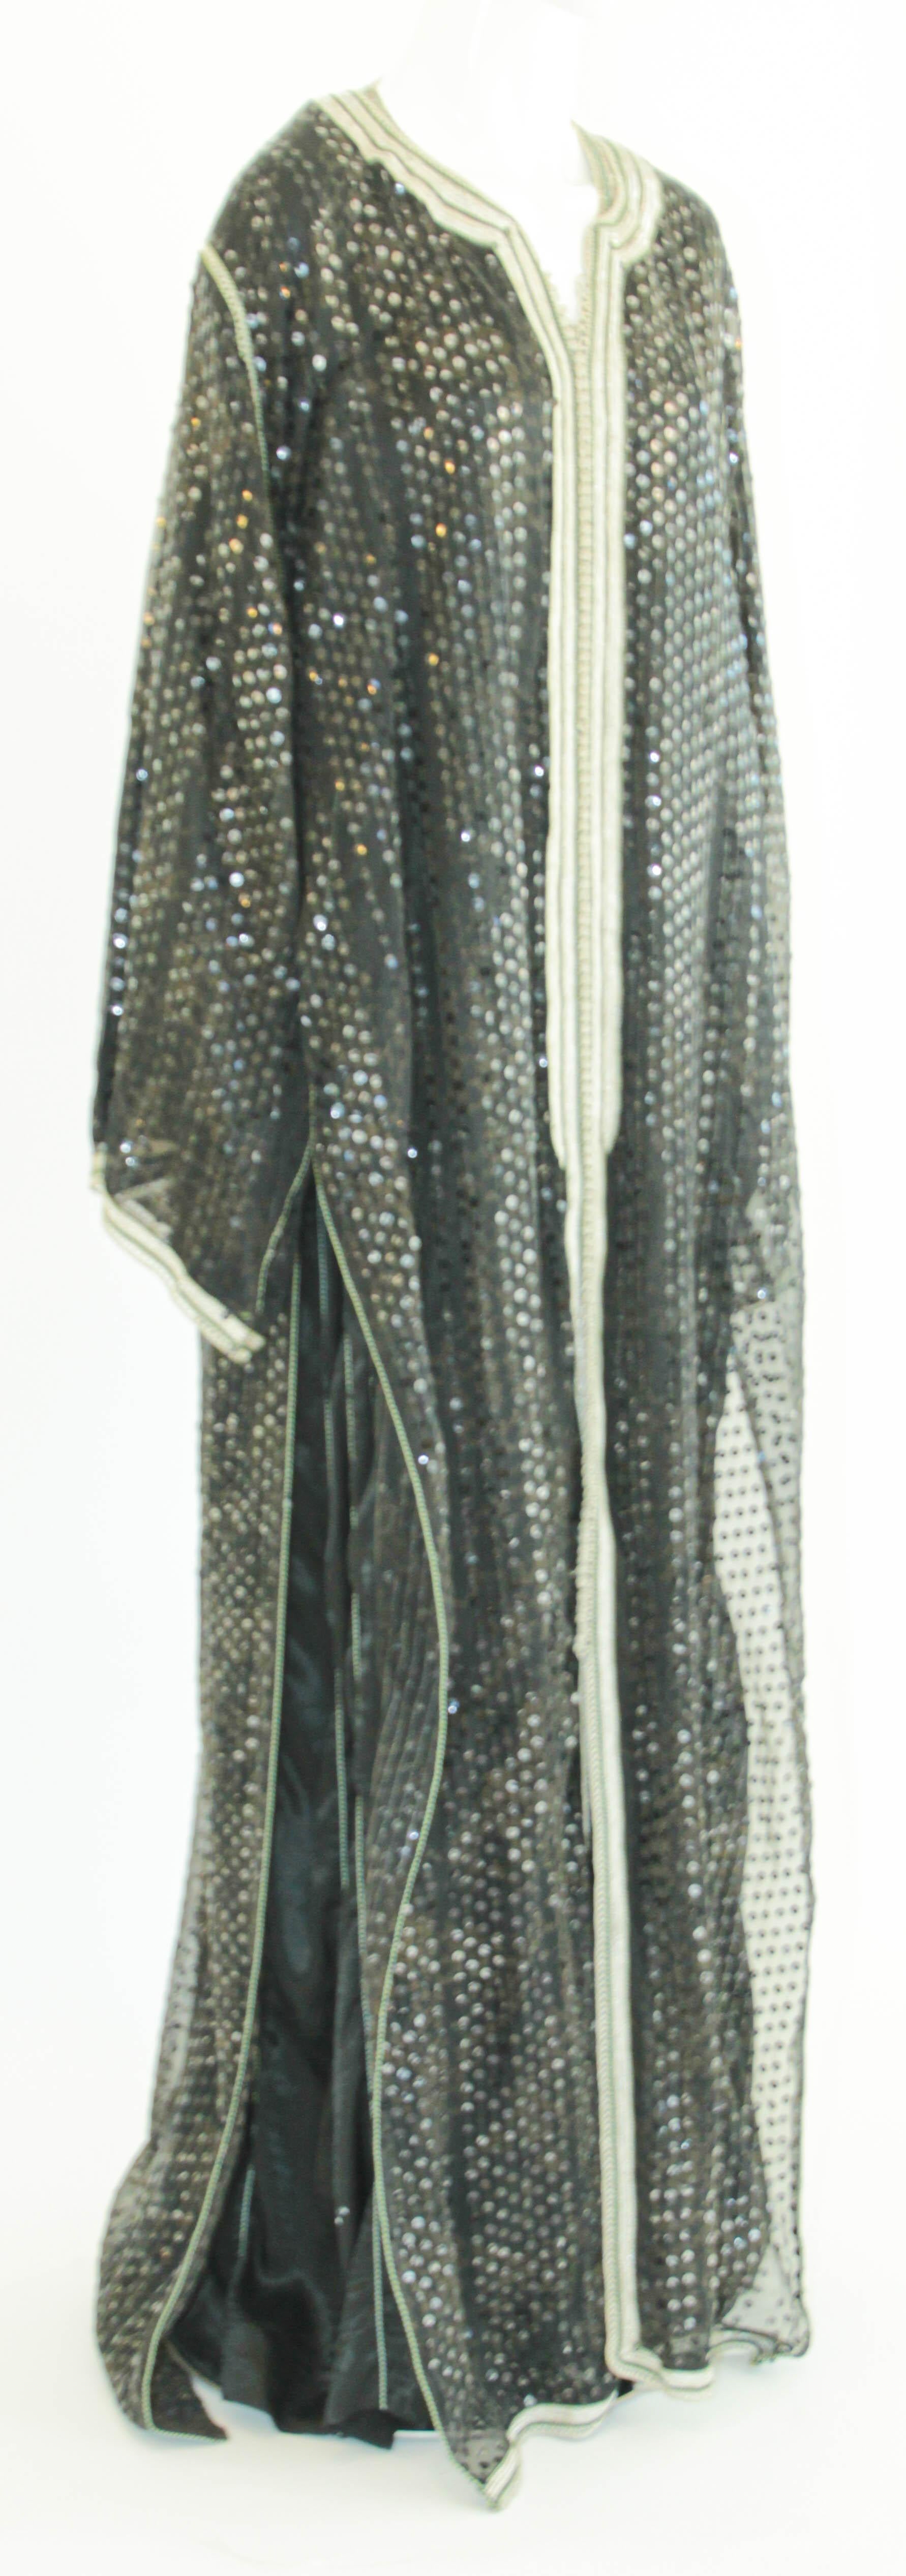 Elégant caftan marocain noir à paillettes avec bordure brodée argentée.
Il s'agit d'un ensemble de deux robes que vous pouvez porter ensemble ou séparément,
vers les années 1980.
Cette longue robe maxi set kaftan a un bord brodé d'argent et embelli